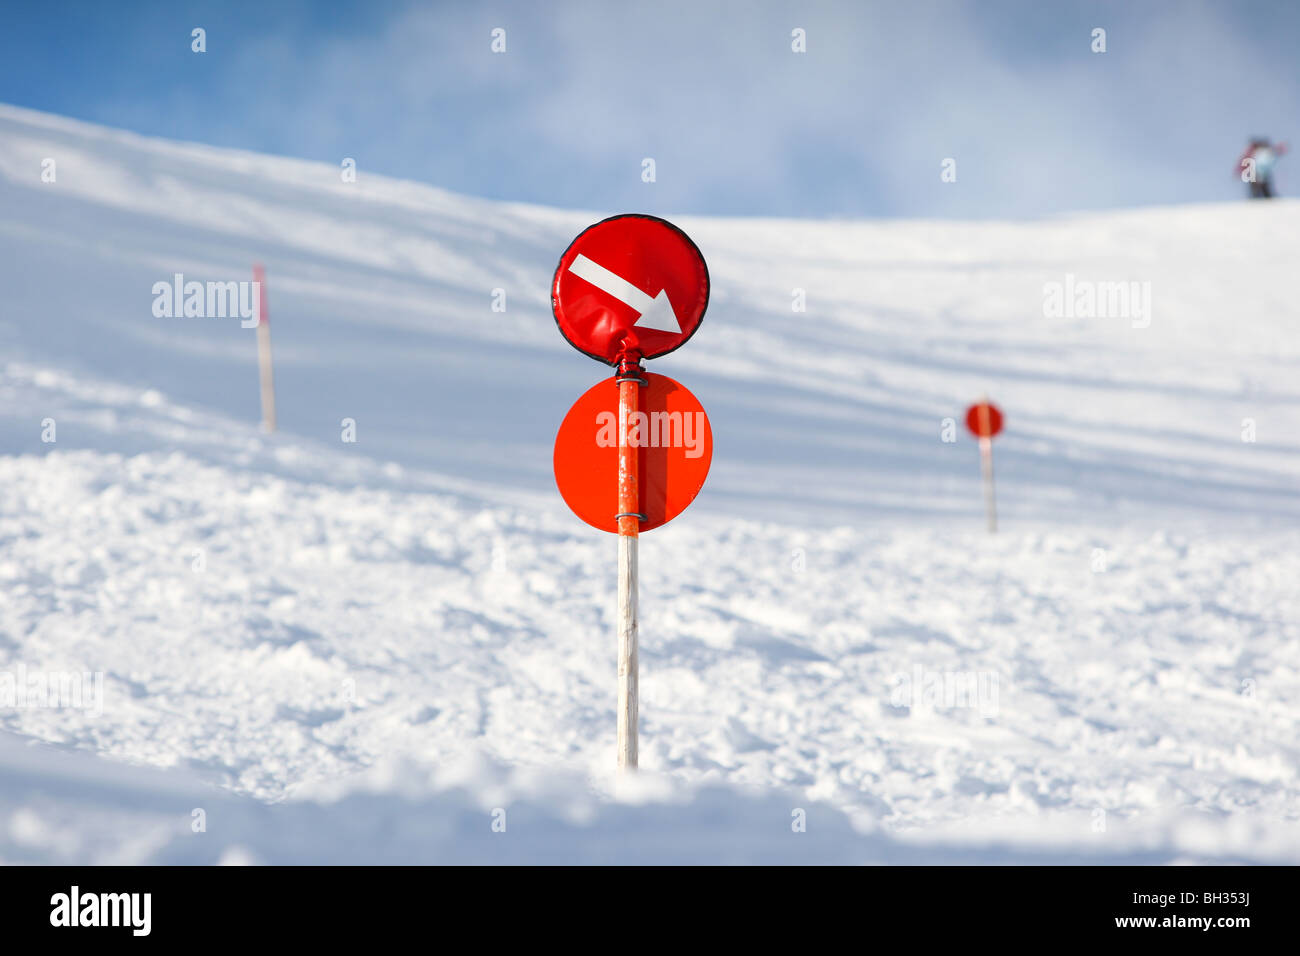 Signo rojo en un post marcando el borde de la pista de esquí con una flecha indicando el camino durante el invierno. Foto de stock